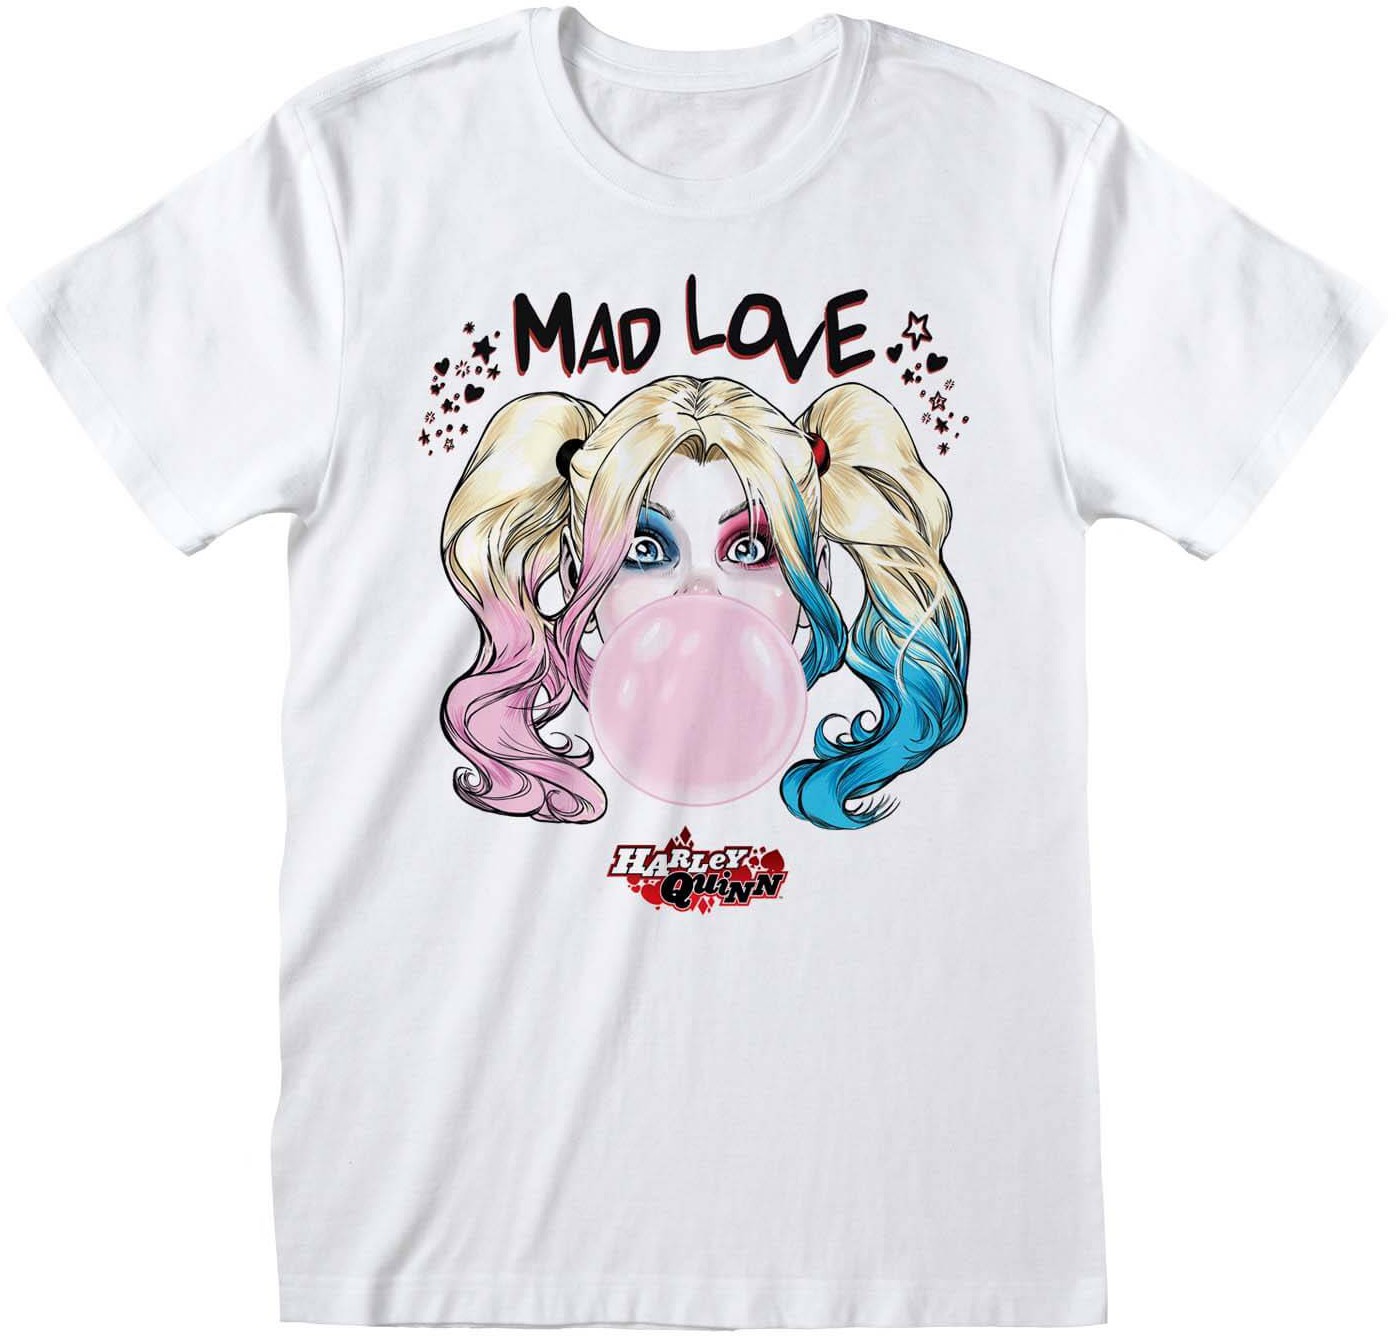 DC - Harley Quinn Mad Love T-Shirt